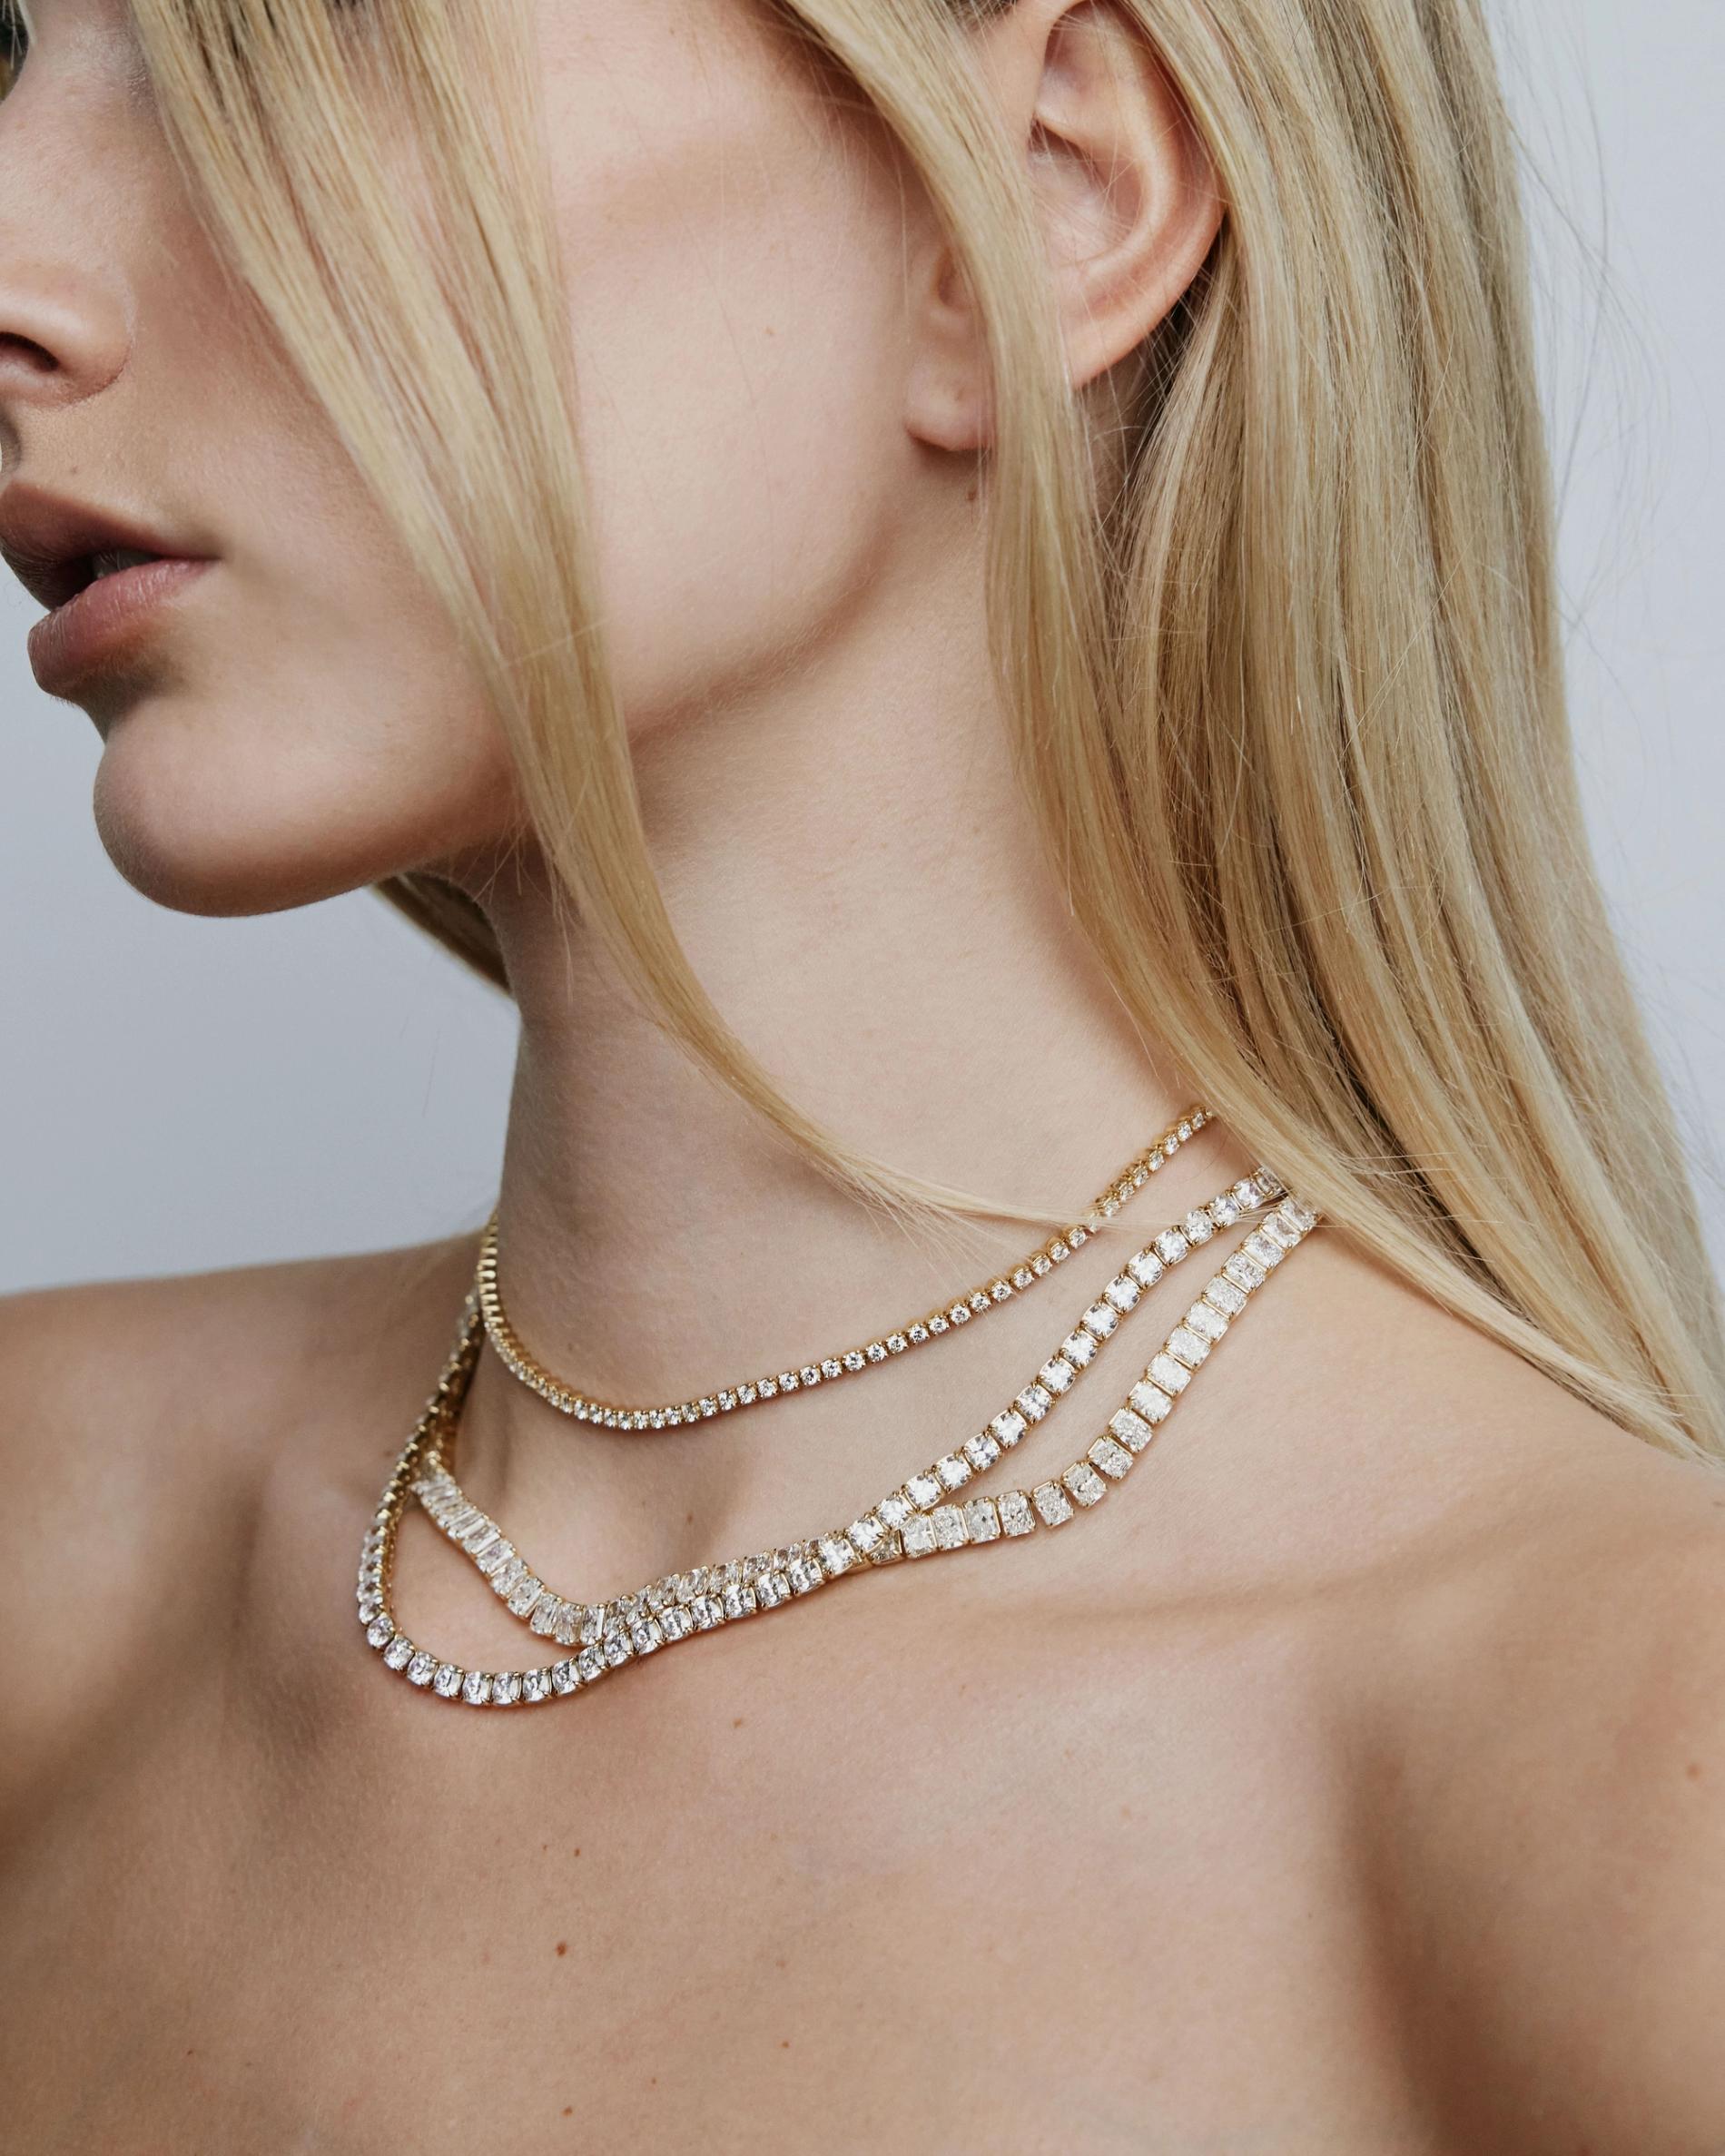 3 diamond necklaces on model